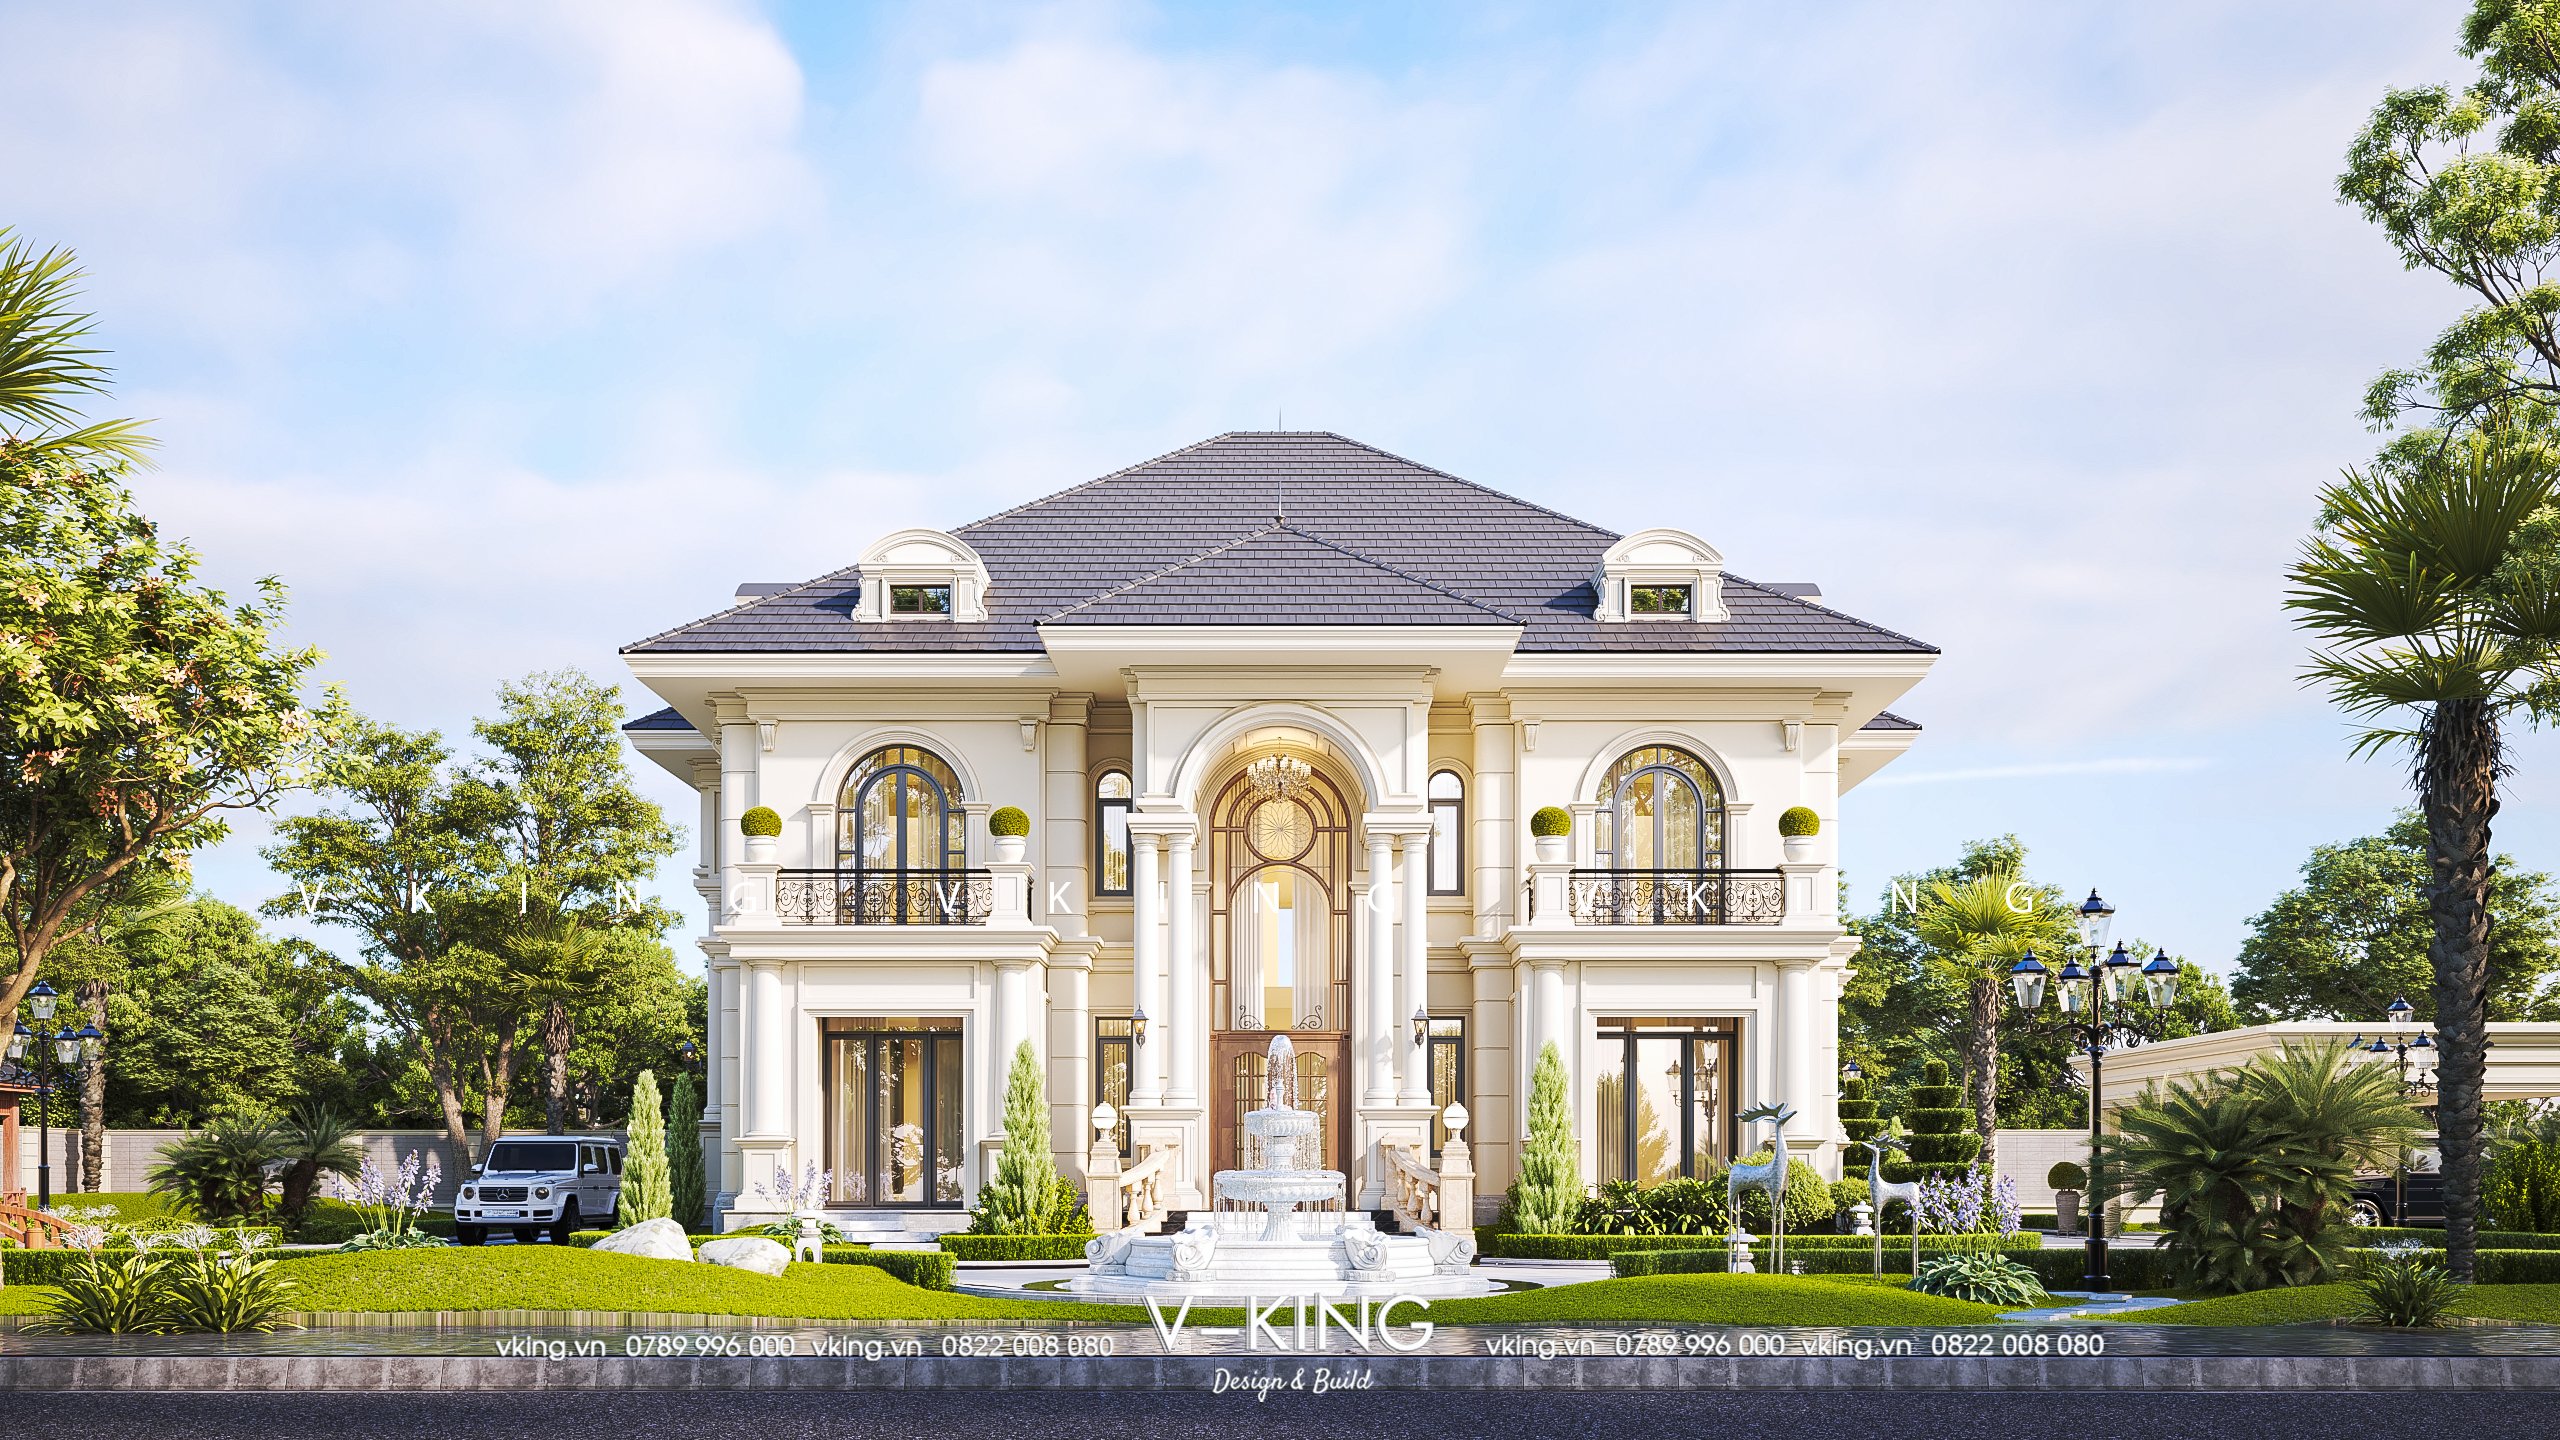 Kiến trúc Vking - đơn vị tư vấn thiết kế nhà tại Đà Nẵng đẹp, uy tín với giá thành hợp lý